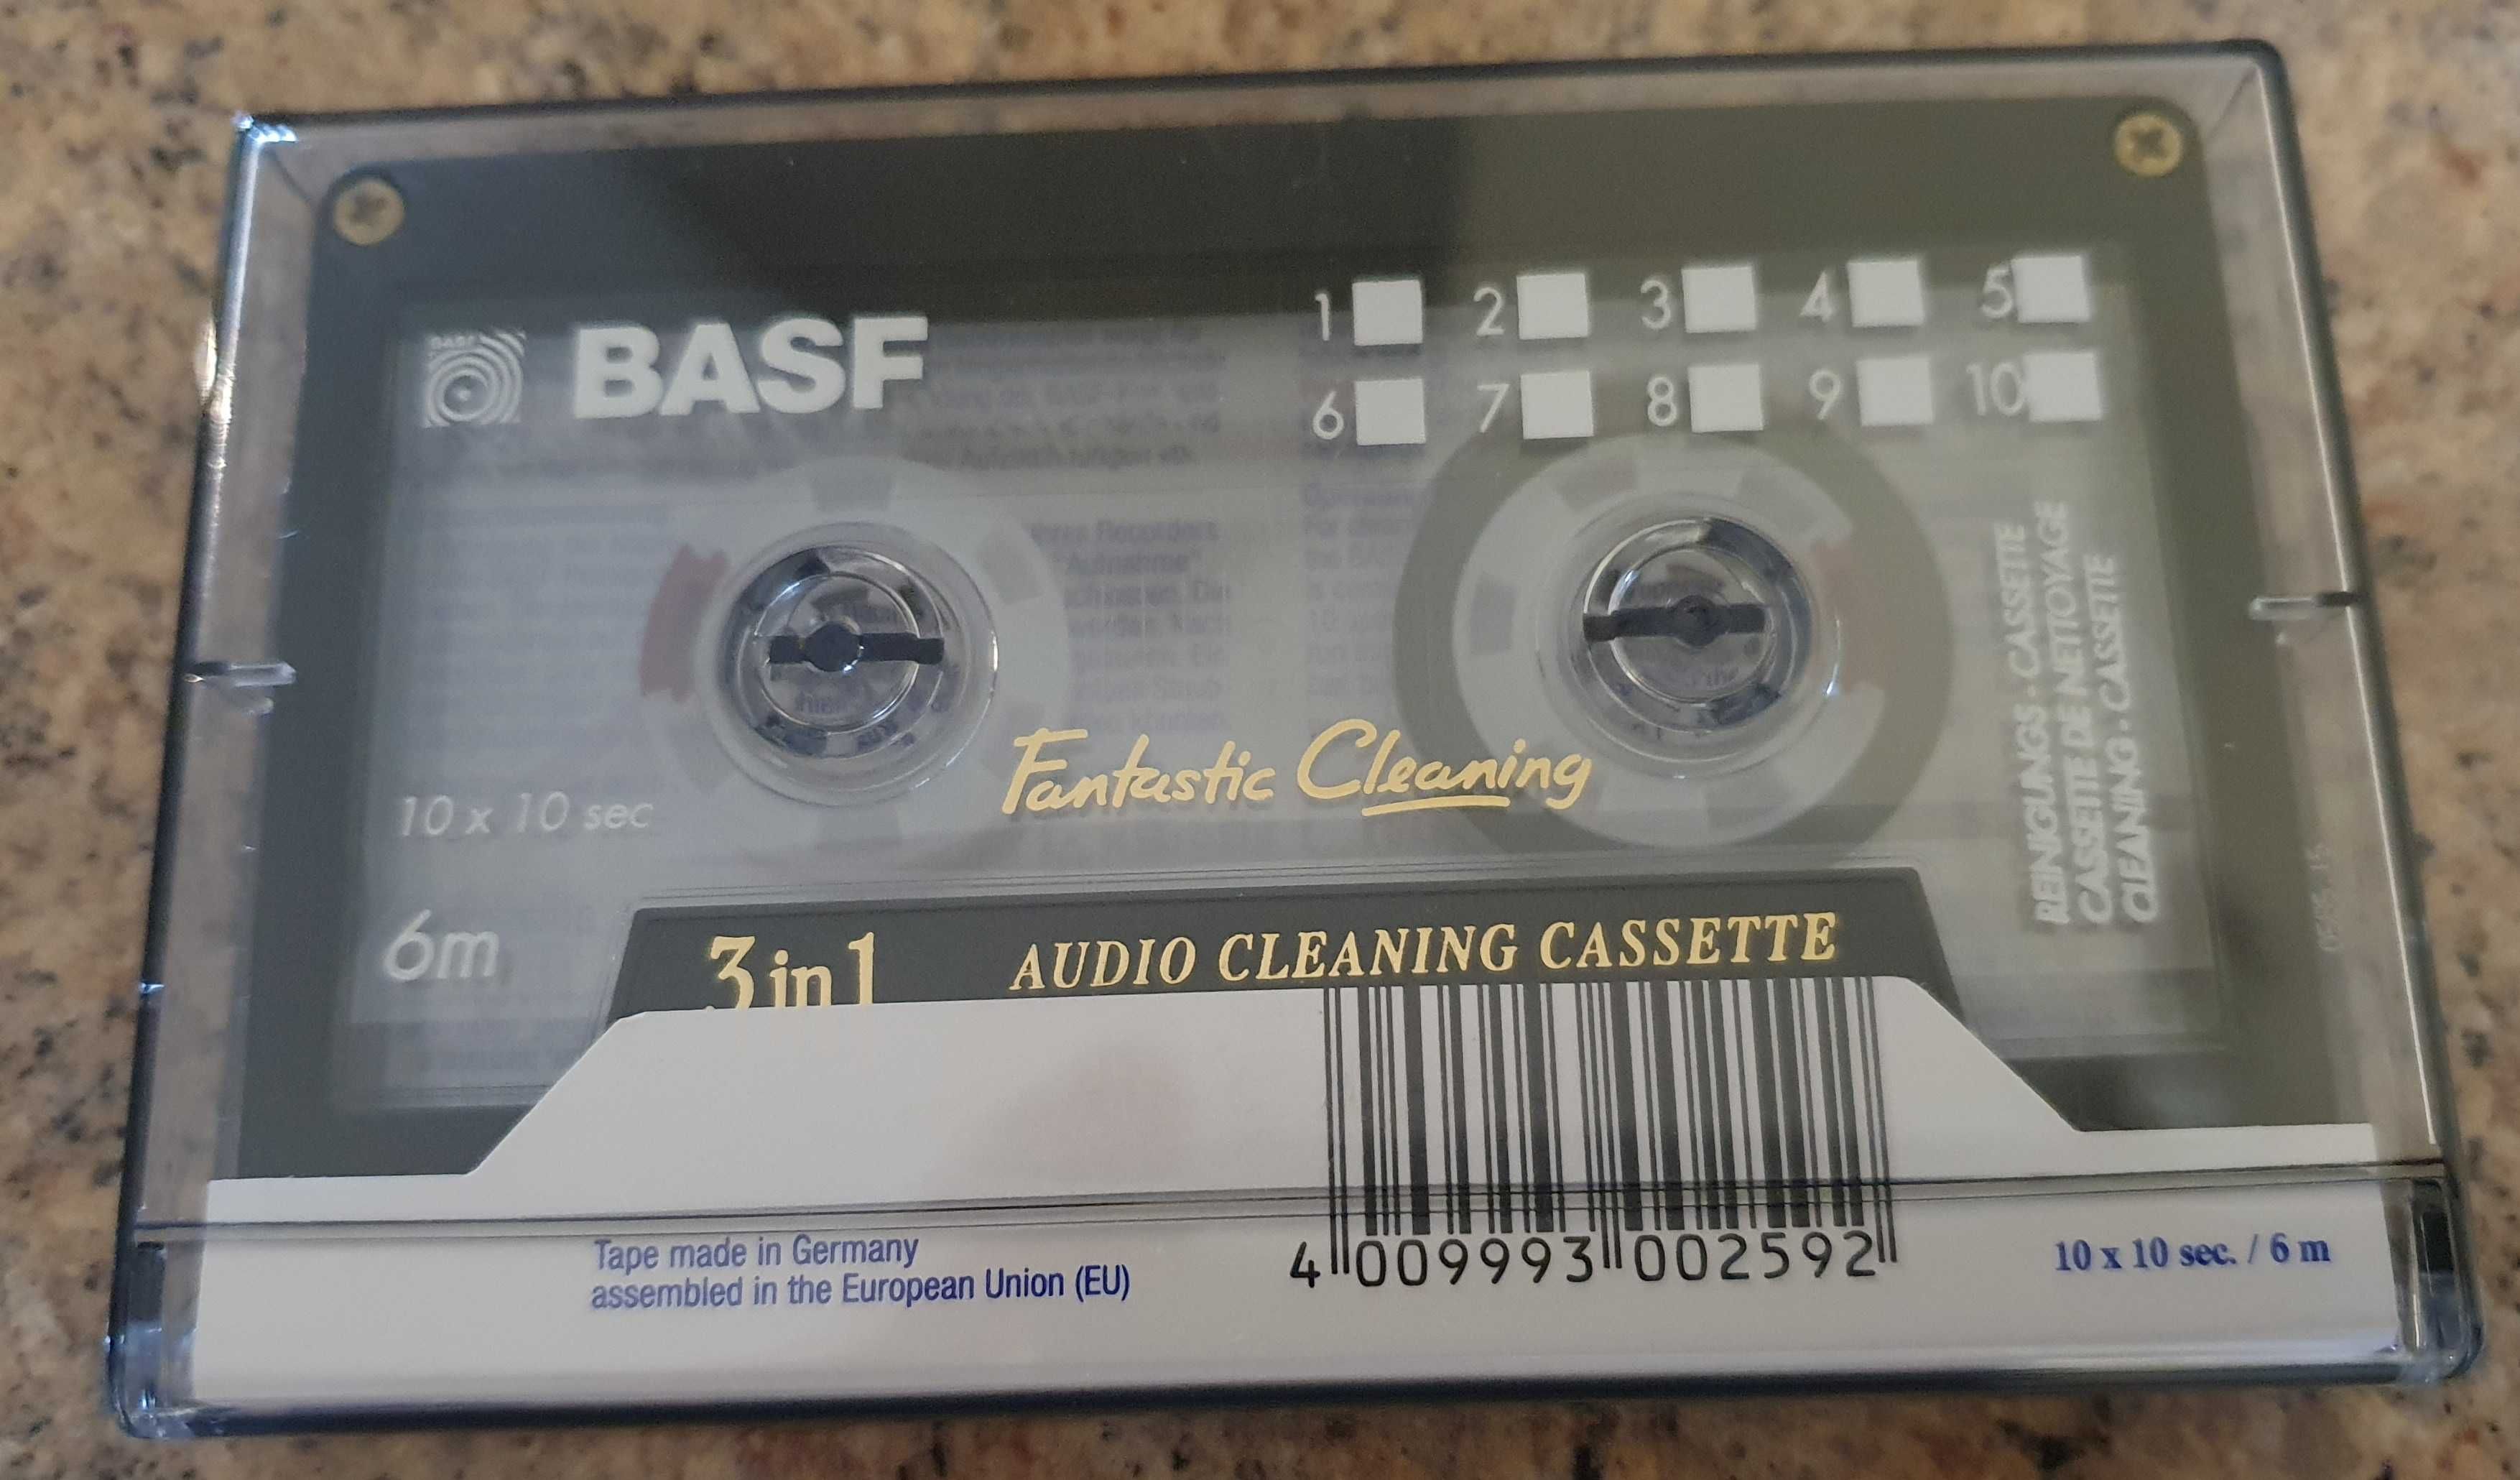 Taśma czyszcząca - Audio Cleaning Cassette 3 in 1 BASF by EMTEC